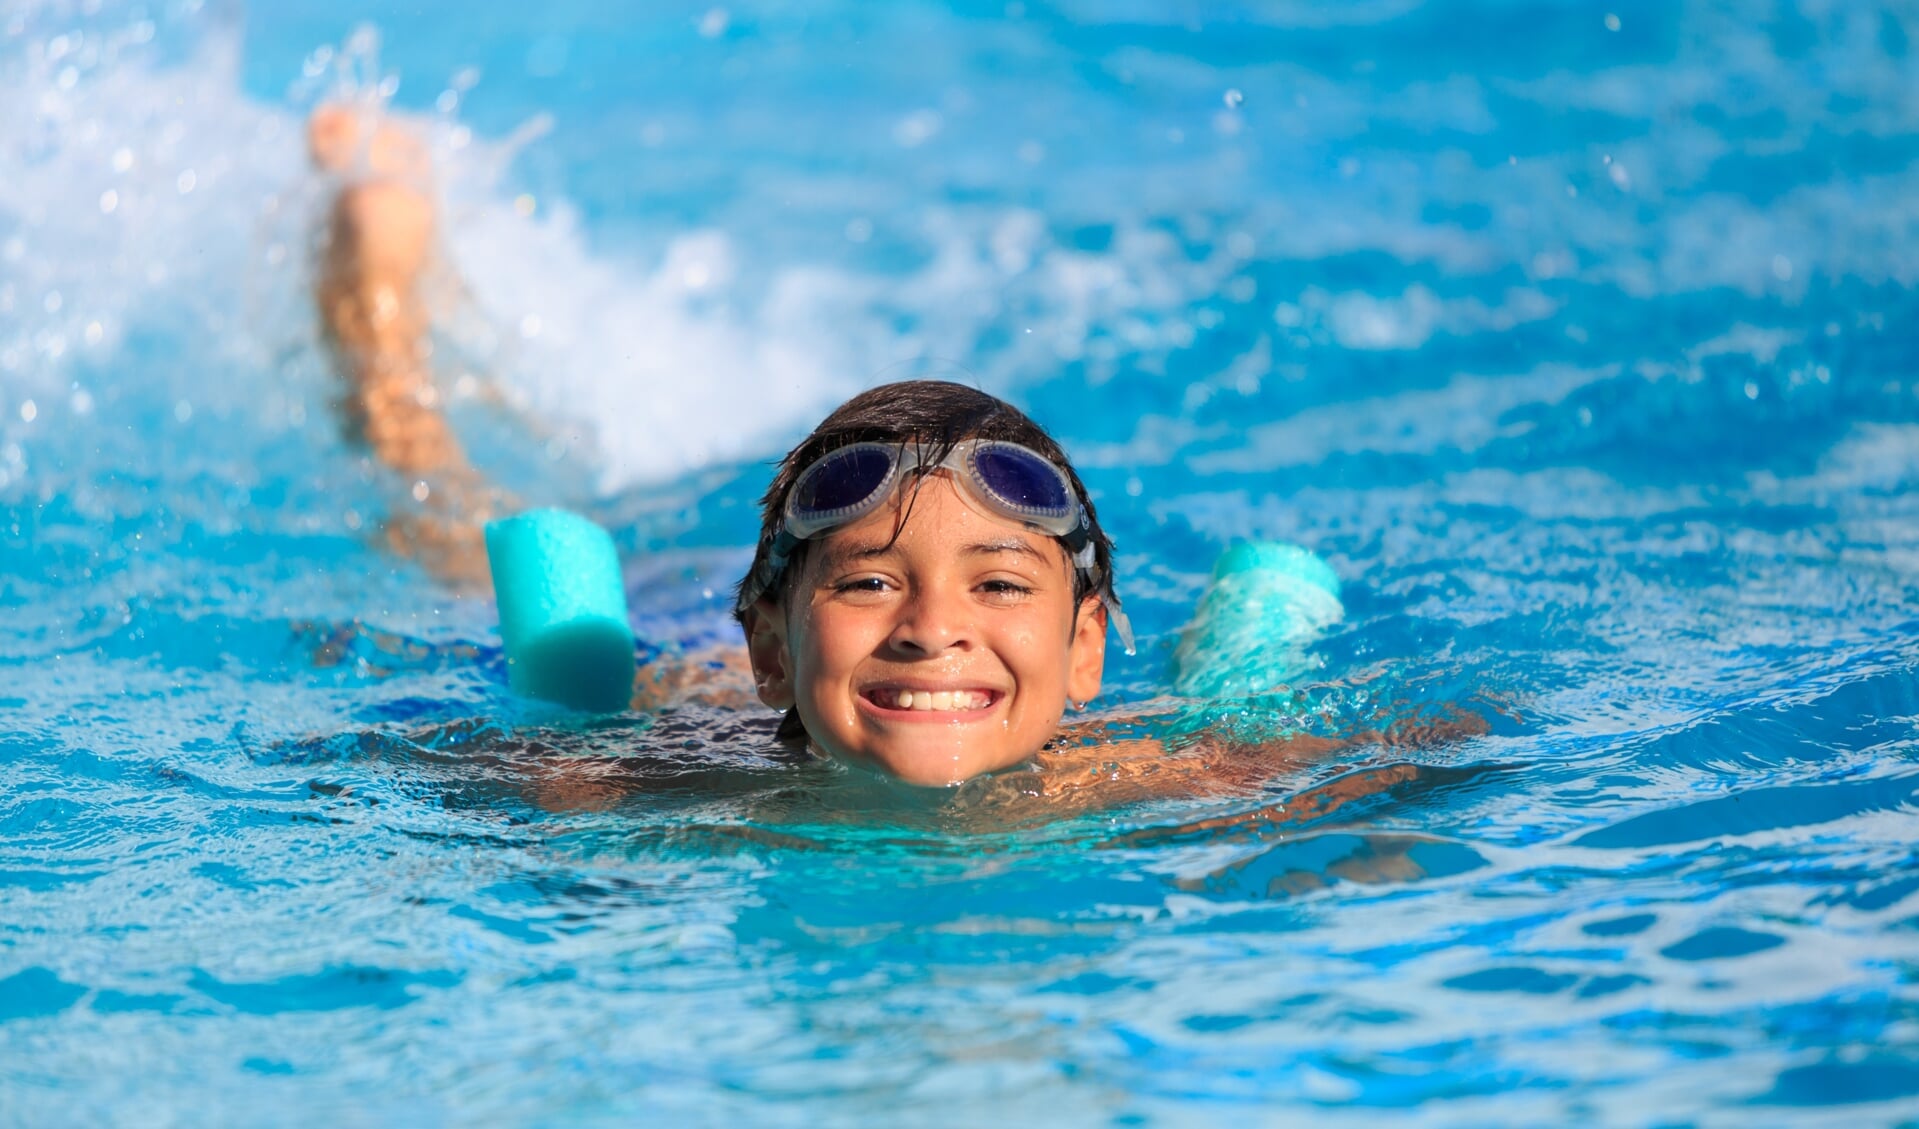 Voorlopig kan er nog gewoon gezwommen worden (Foto: Shutterstock).